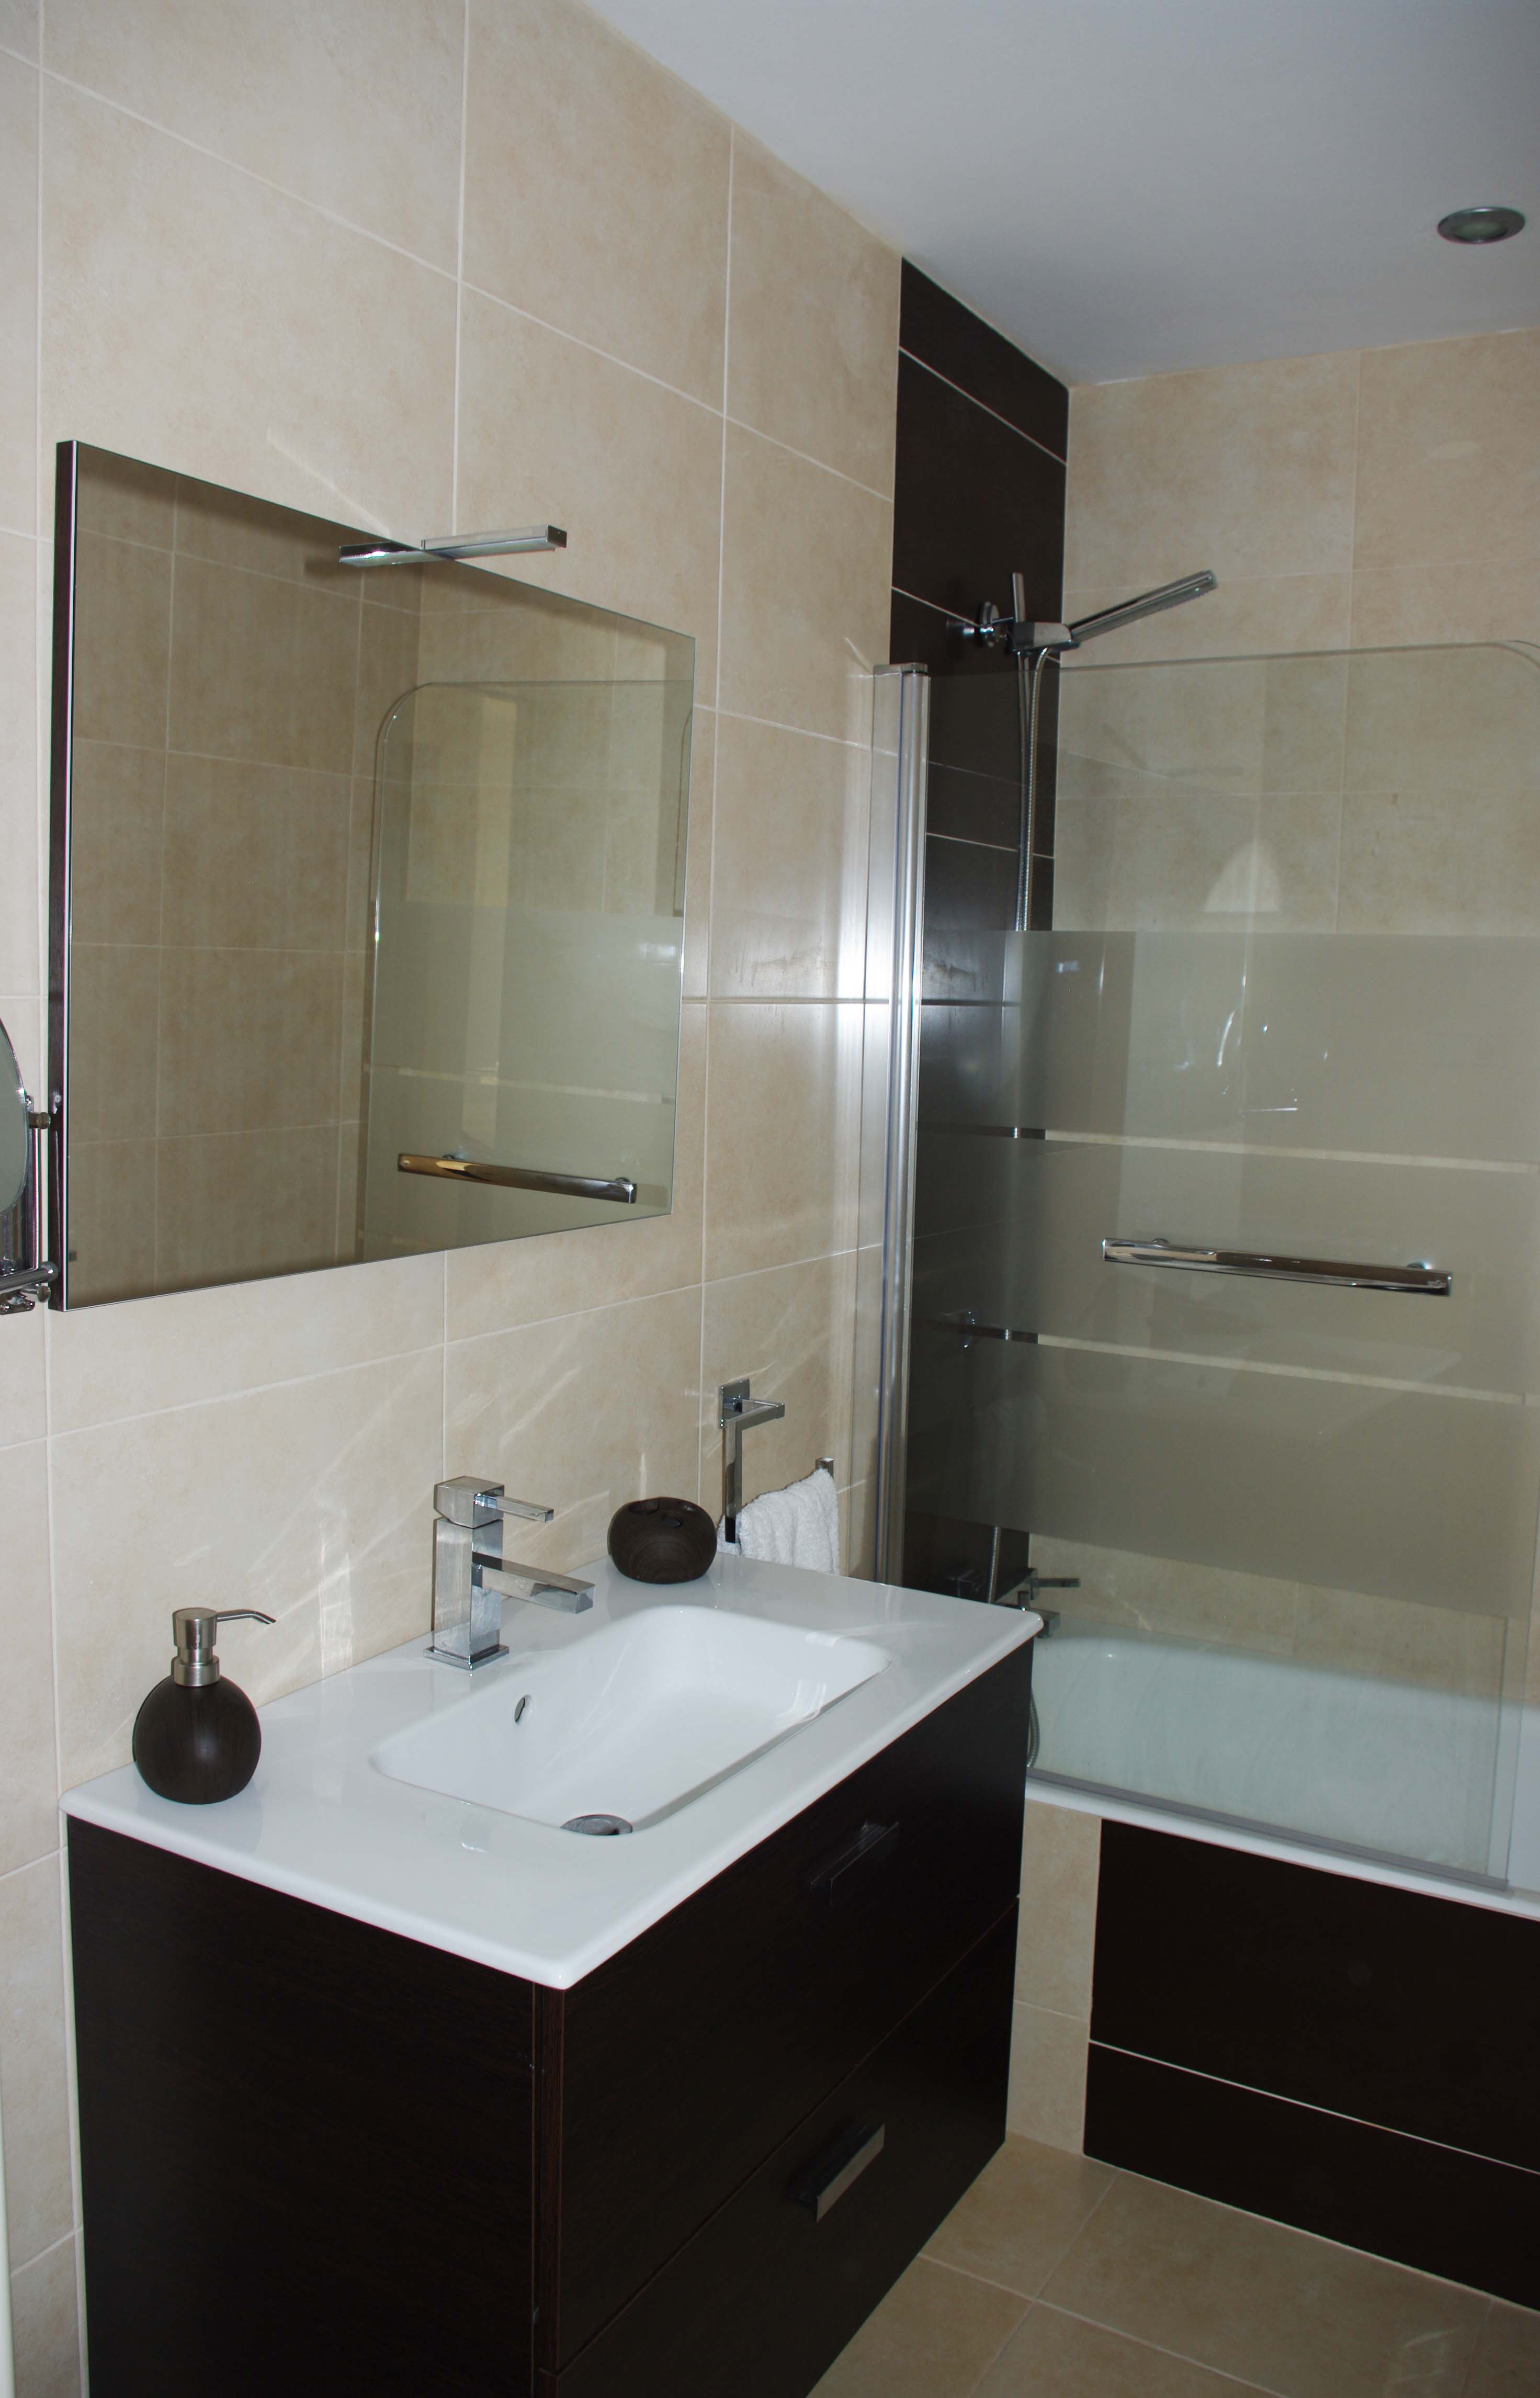 Skol apartments, Marbella - apartment 811A -  bathroom